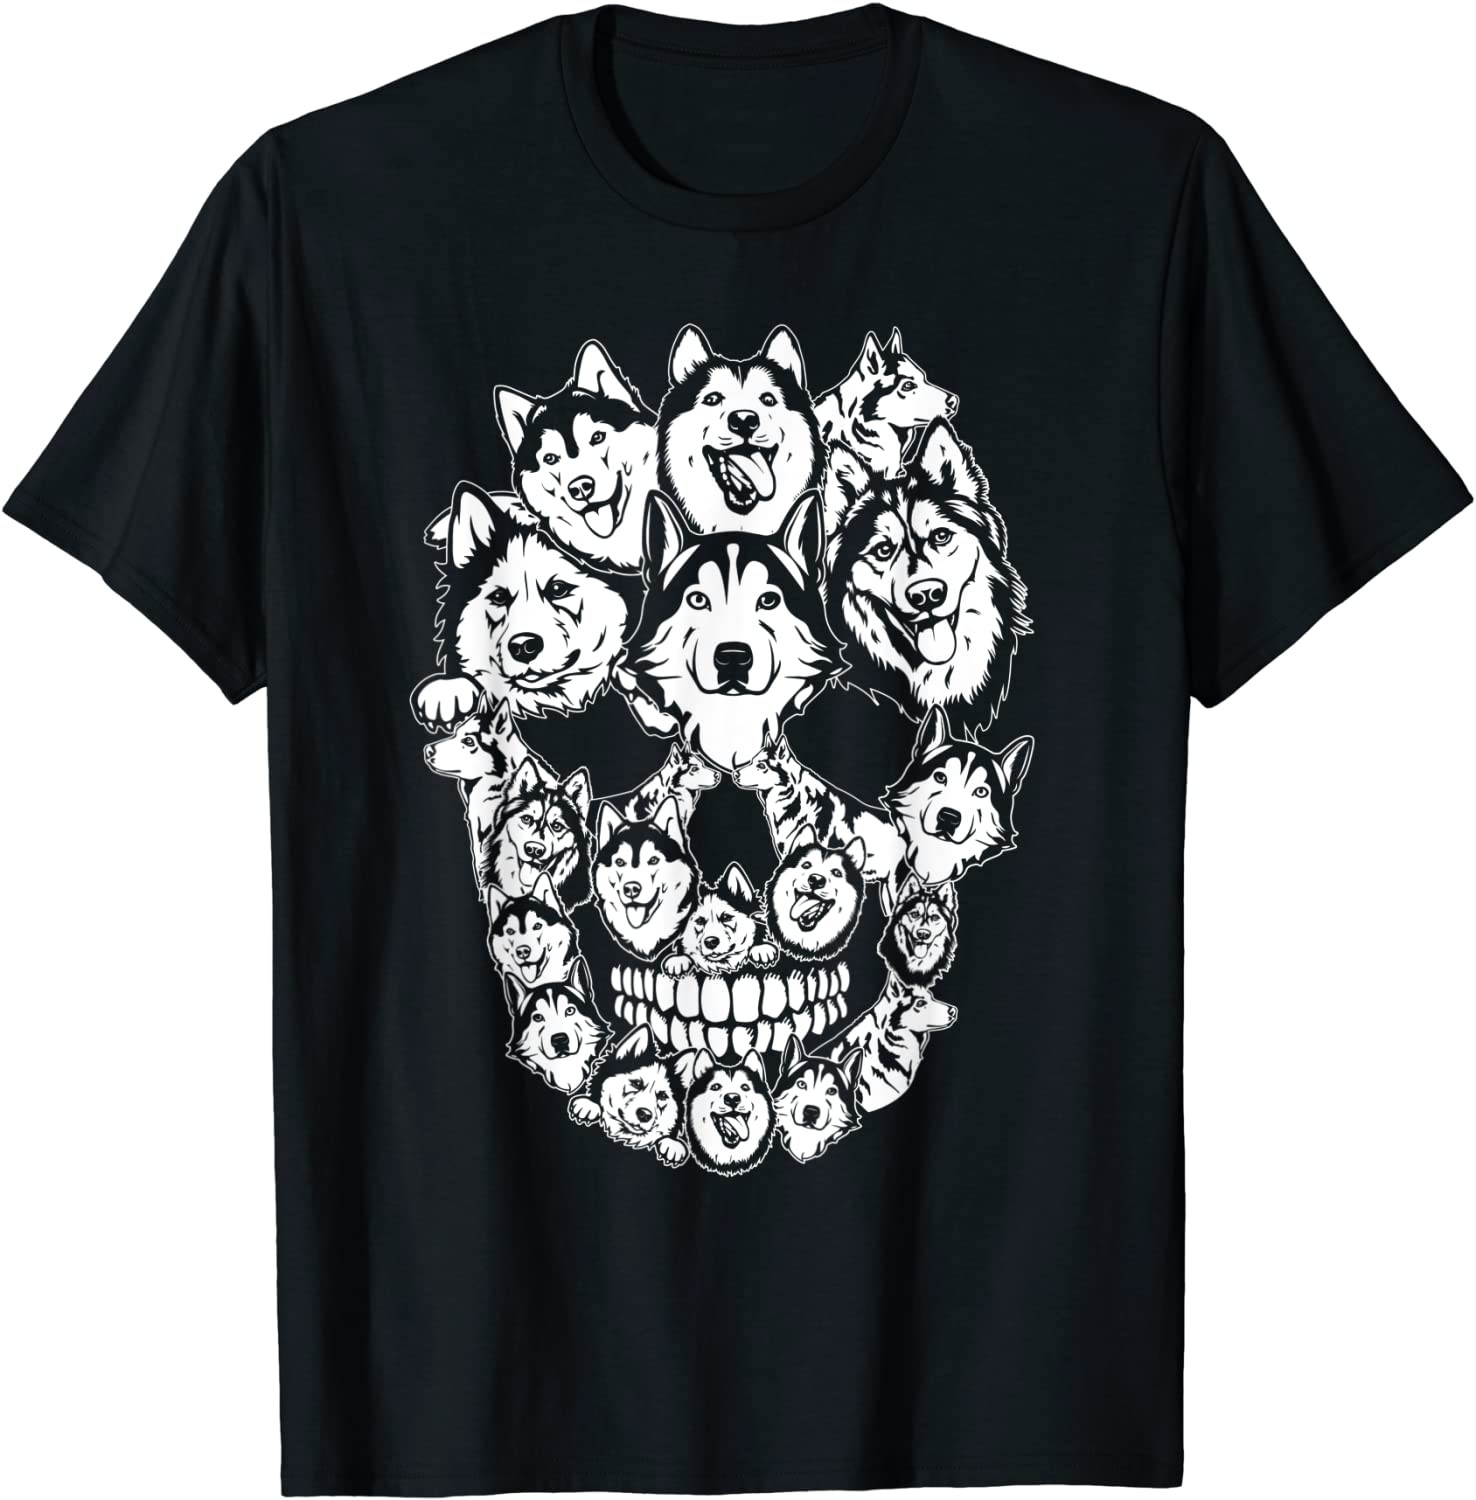 Funny Halloween Costume Skull Siberian Husky Dog Lover Gift T-Shirt